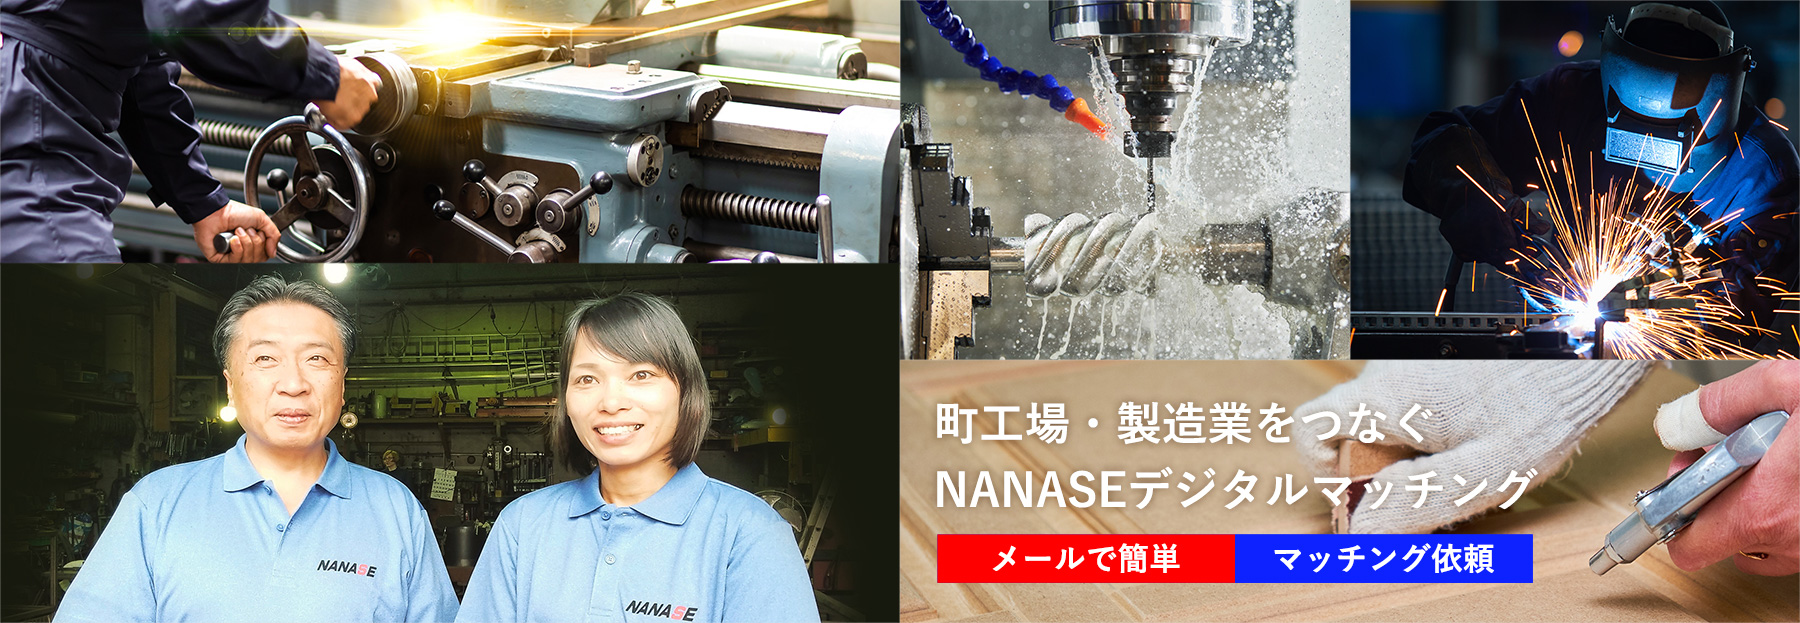 NANASEデジタルマッチング町工場・製造業をつなぐNANASEデジタルマッチング メールで簡単マッチング依頼